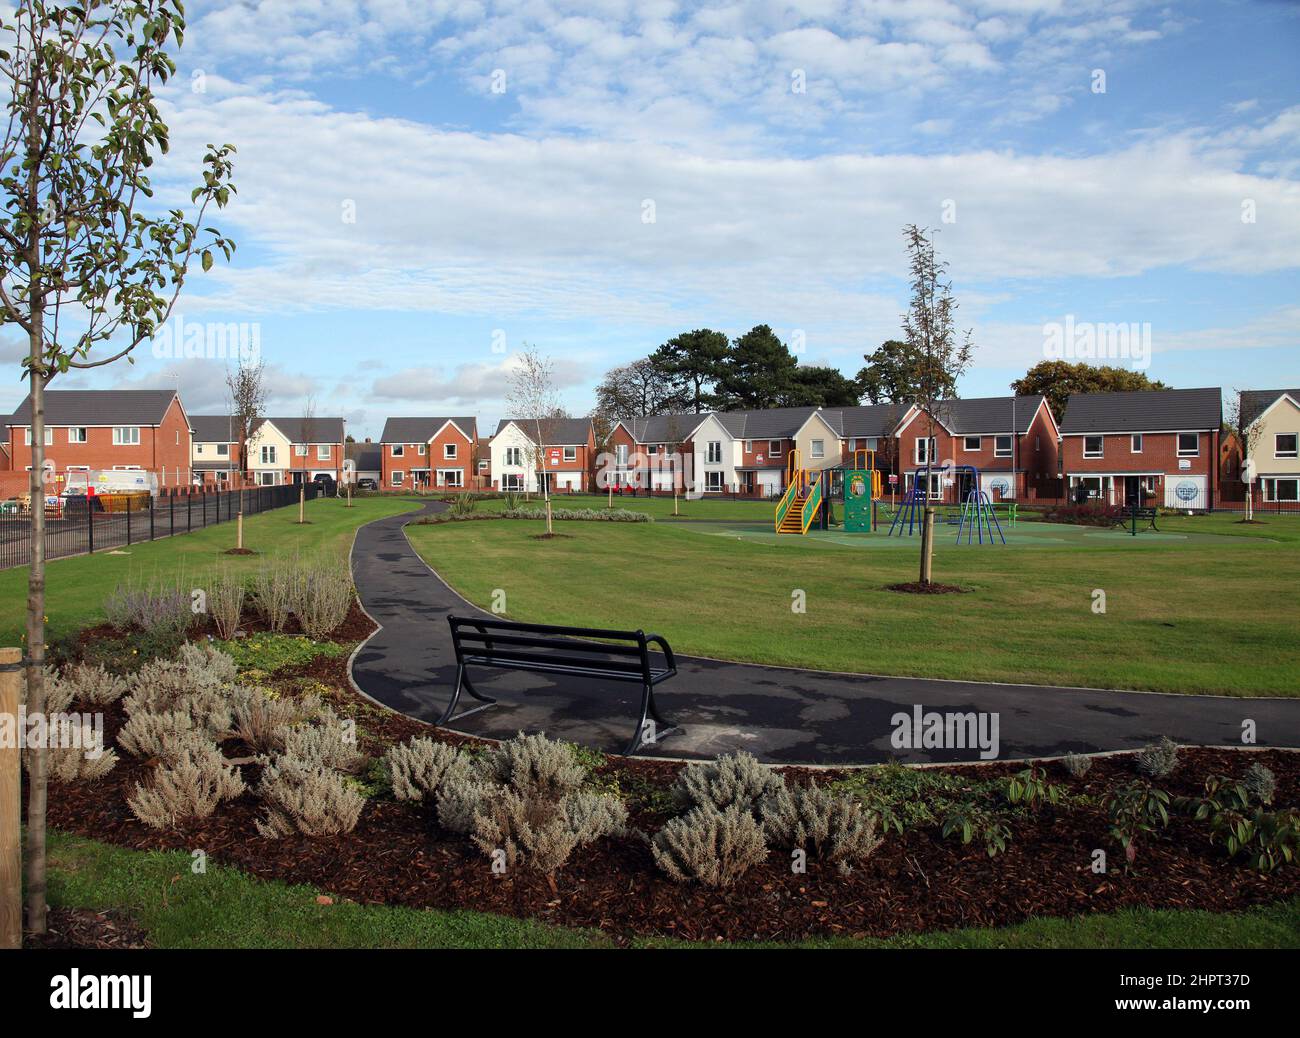 Grünflächen und Kinderspielplatz sind in eine moderne Wohnsiedlung in Wolverhampton, West Midlands, Großbritannien, integriert Stockfoto